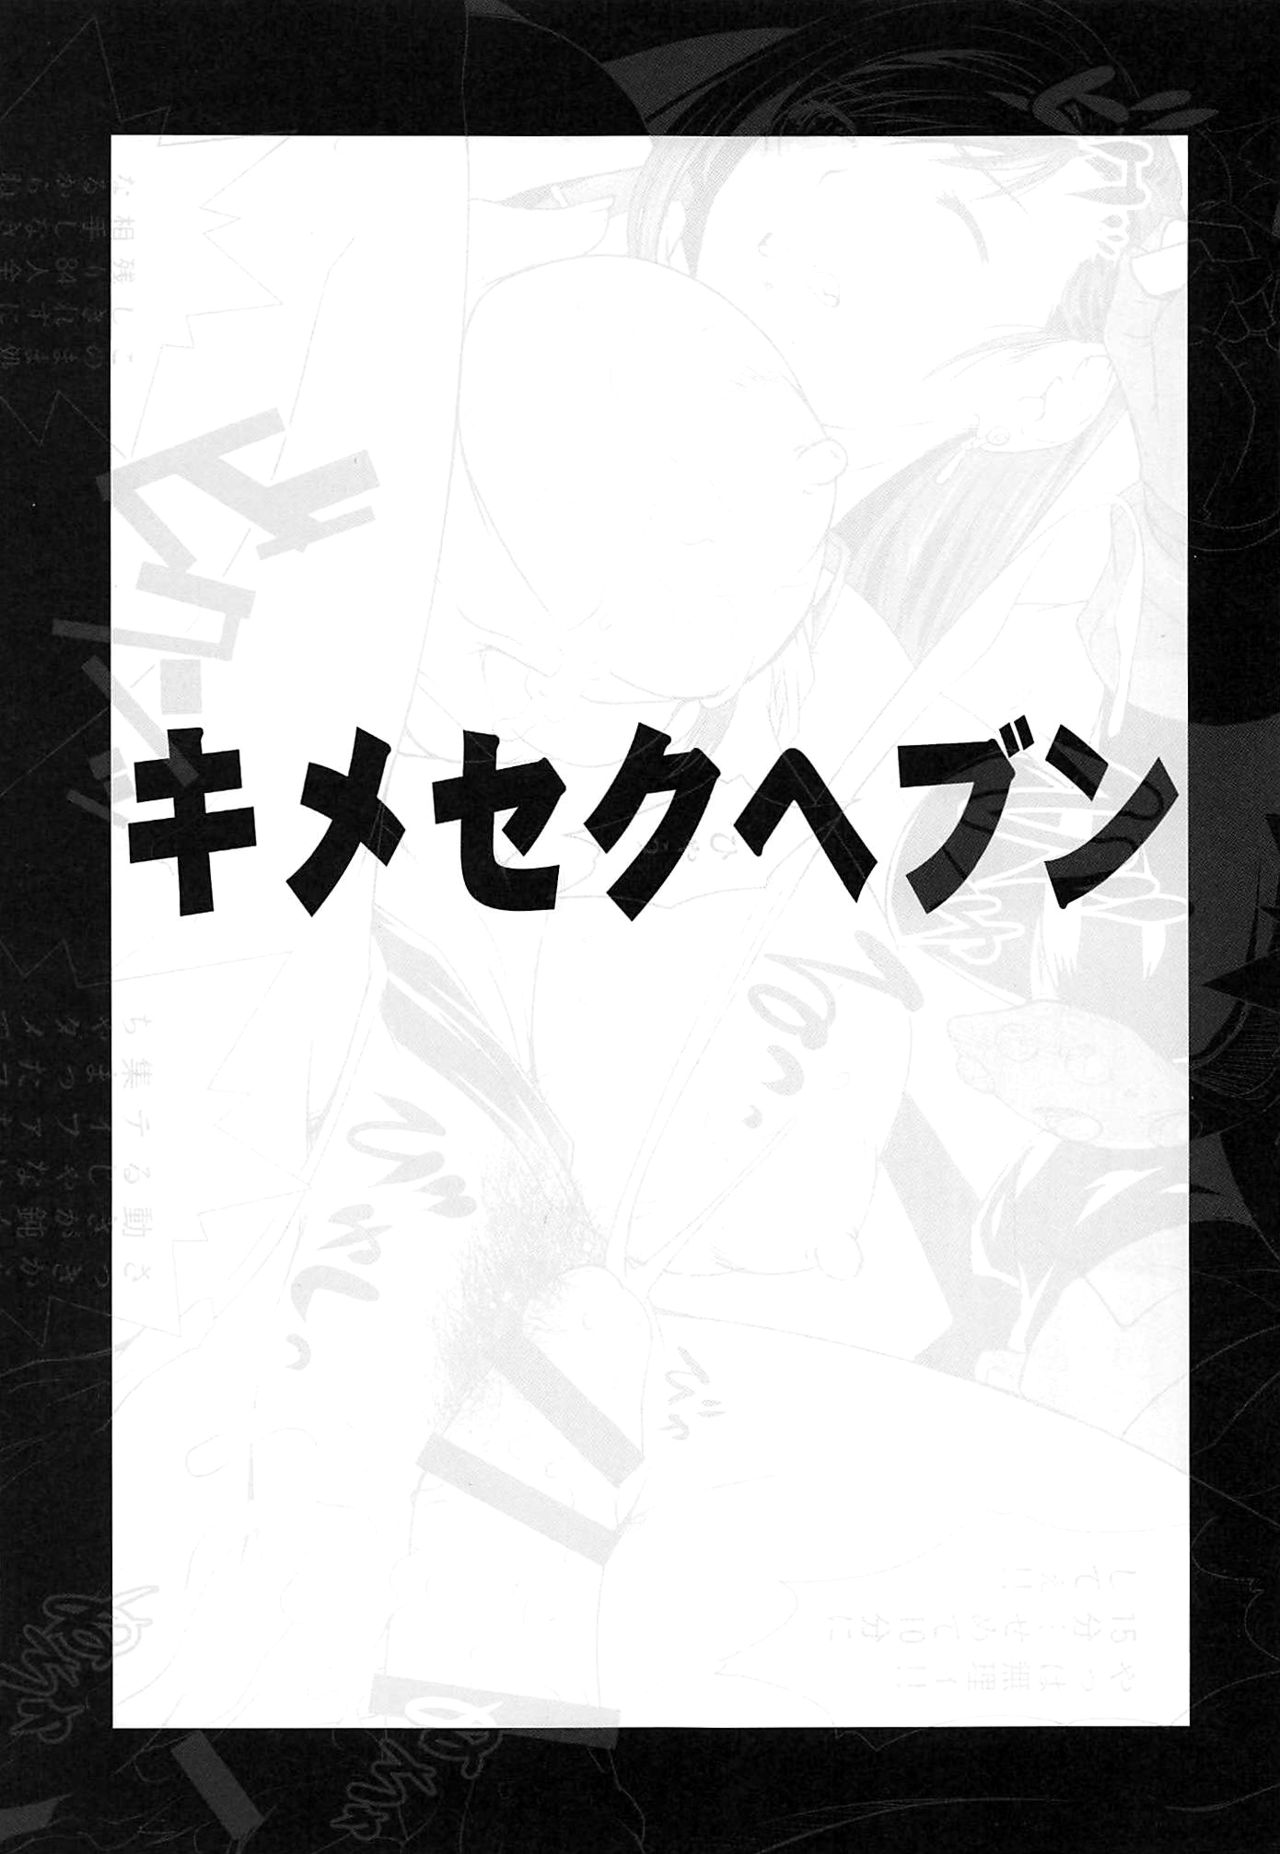 (C97) [Ruki Ruki EXISS (Fumizuki Misoka)] Kimeseku Heaven + C97 Omake Paper (Final Fantasy VII) [Chinese] [黑条汉化$DDD] (C97) [るきるきEXISS (文月晦日)] Kimesekuへぶん + C97おまけペーパー (ファイナルファンタジーVII) [中国翻訳]